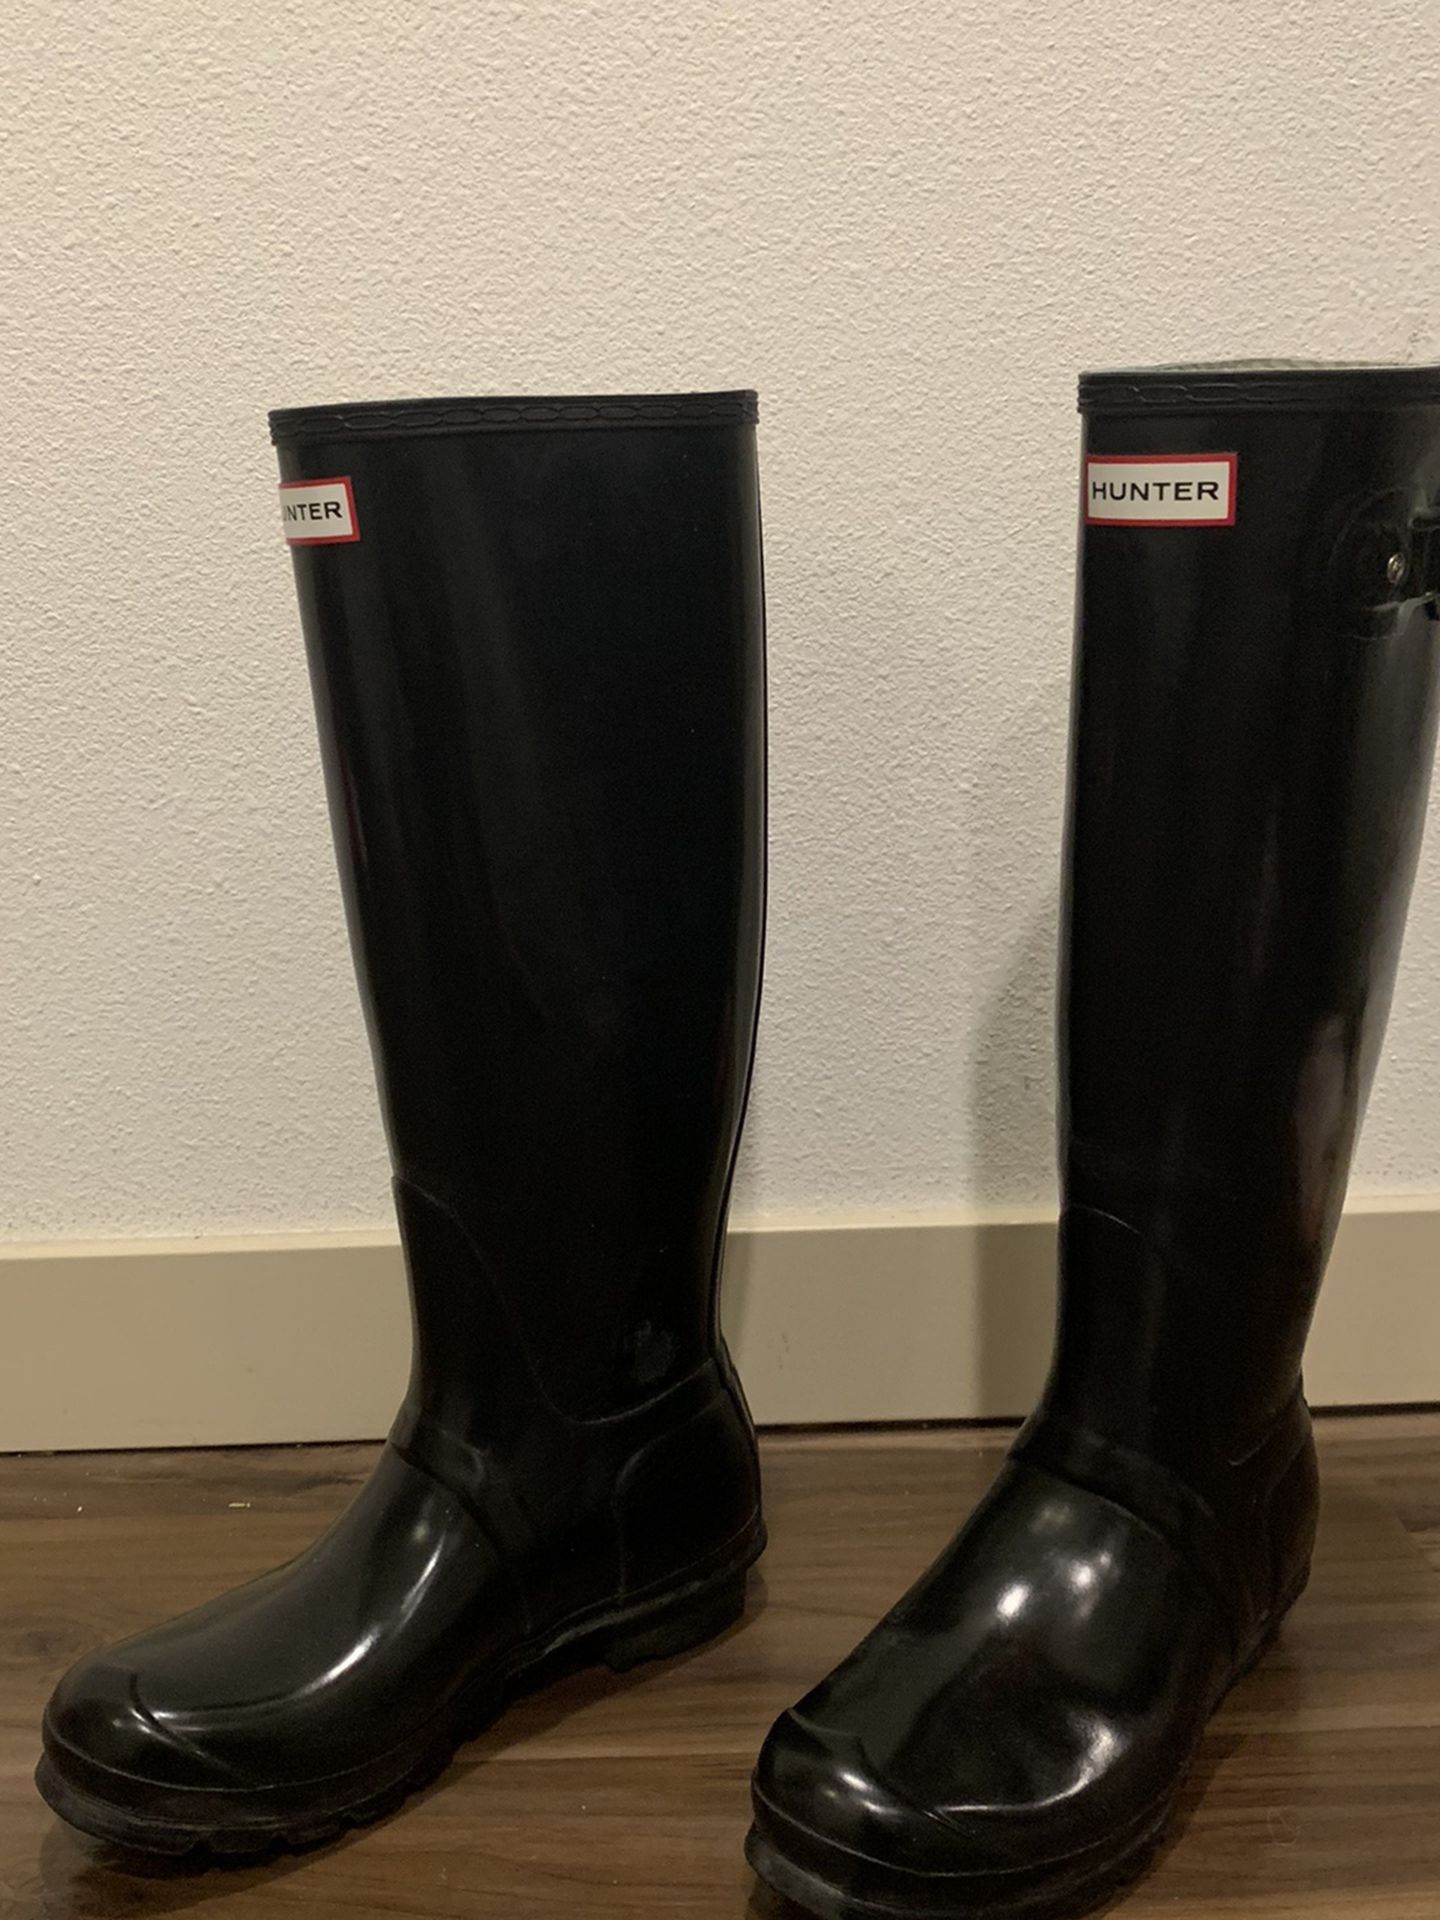 Black Tall Hunter Rain Boots